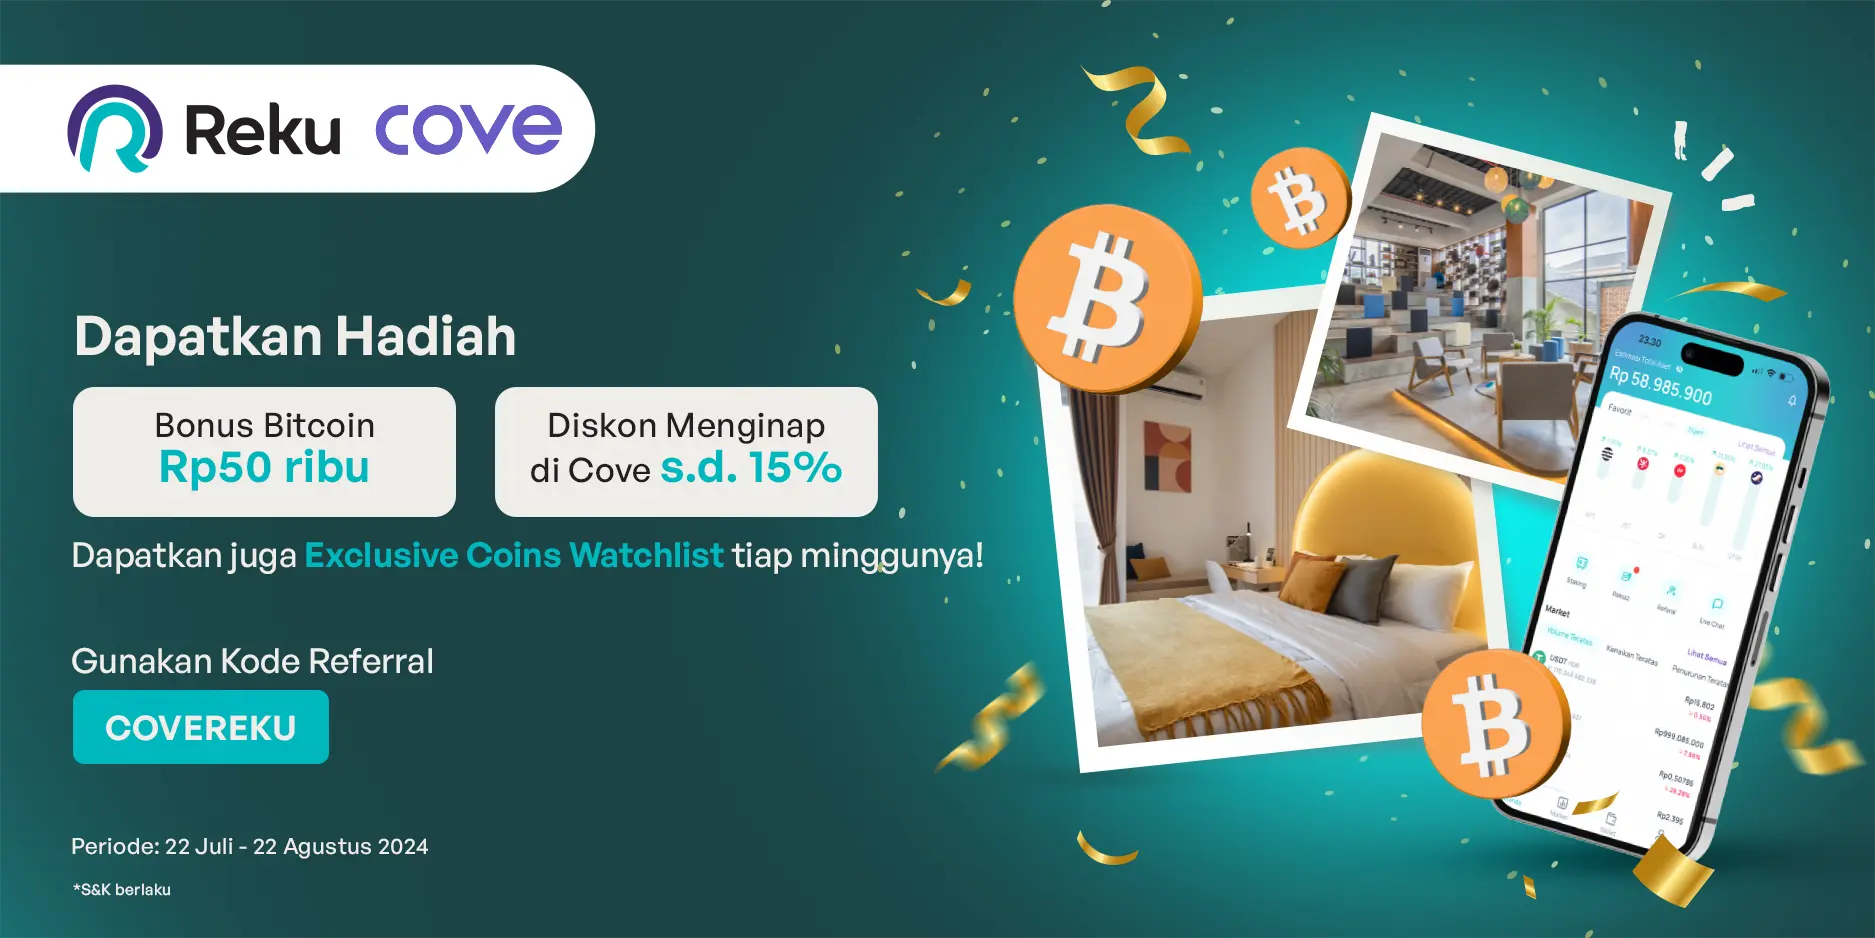 Dapatkan Bitcoin Rp50 ribu dan Diskon Menginap 15% di Cove!